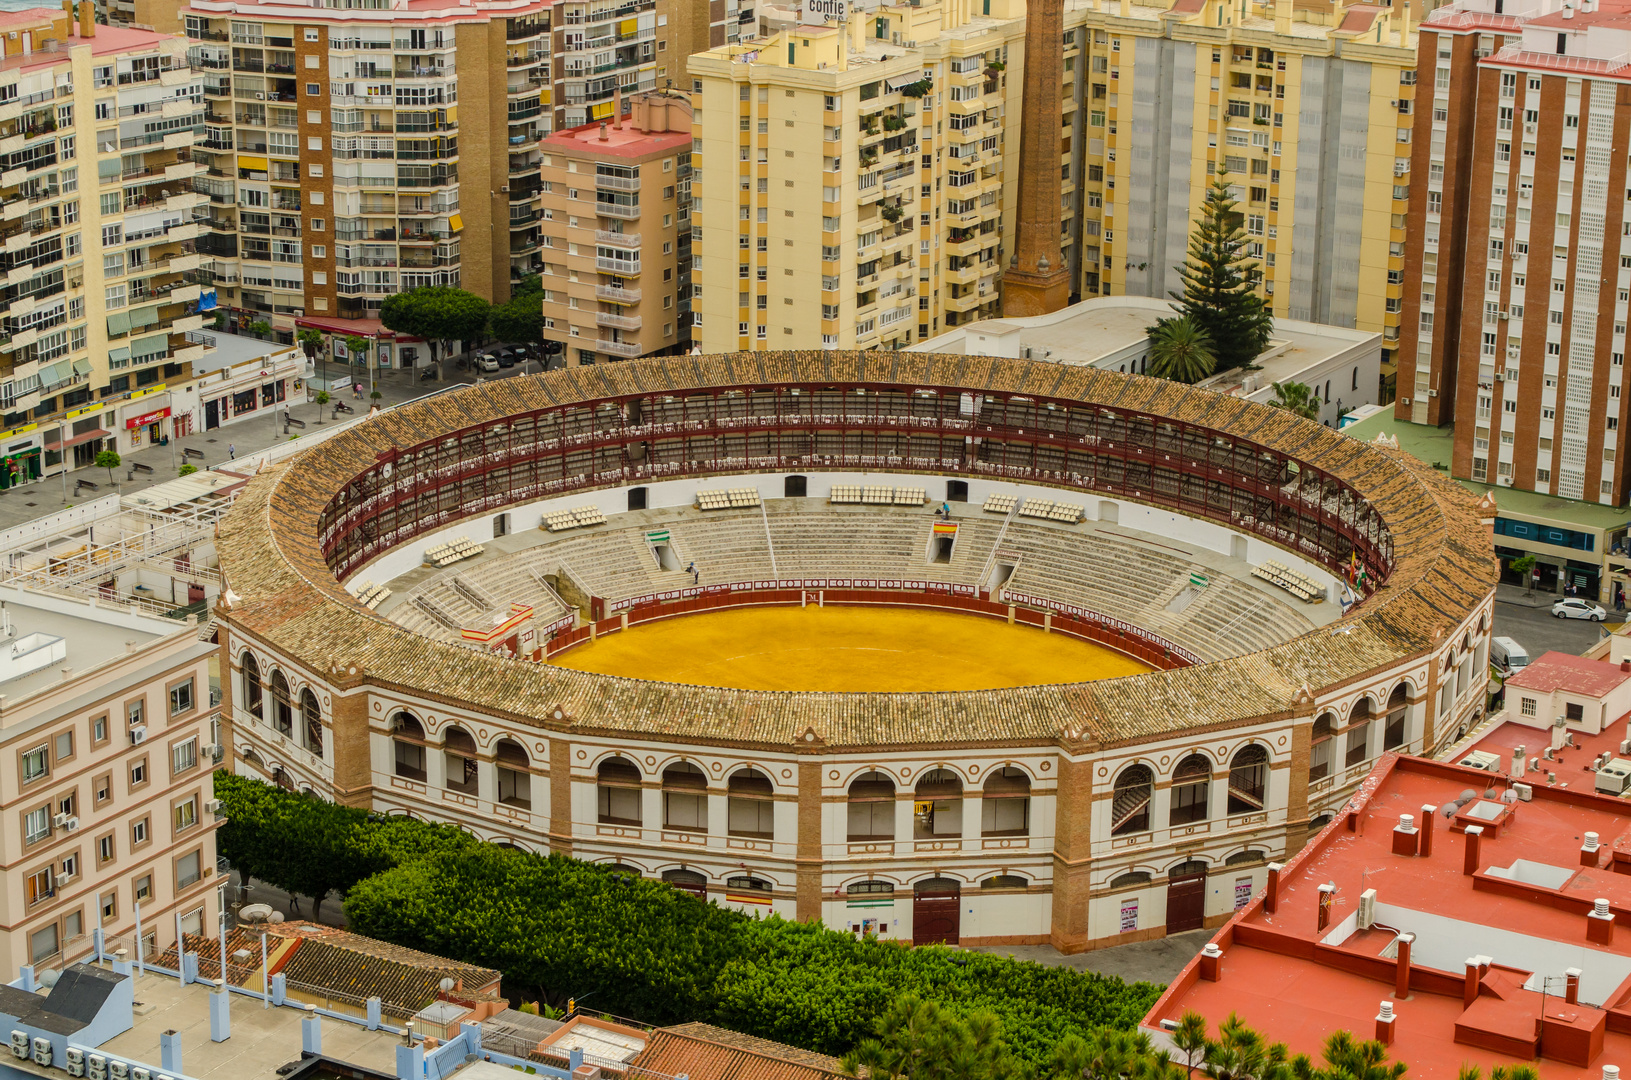 Malaga - Arena